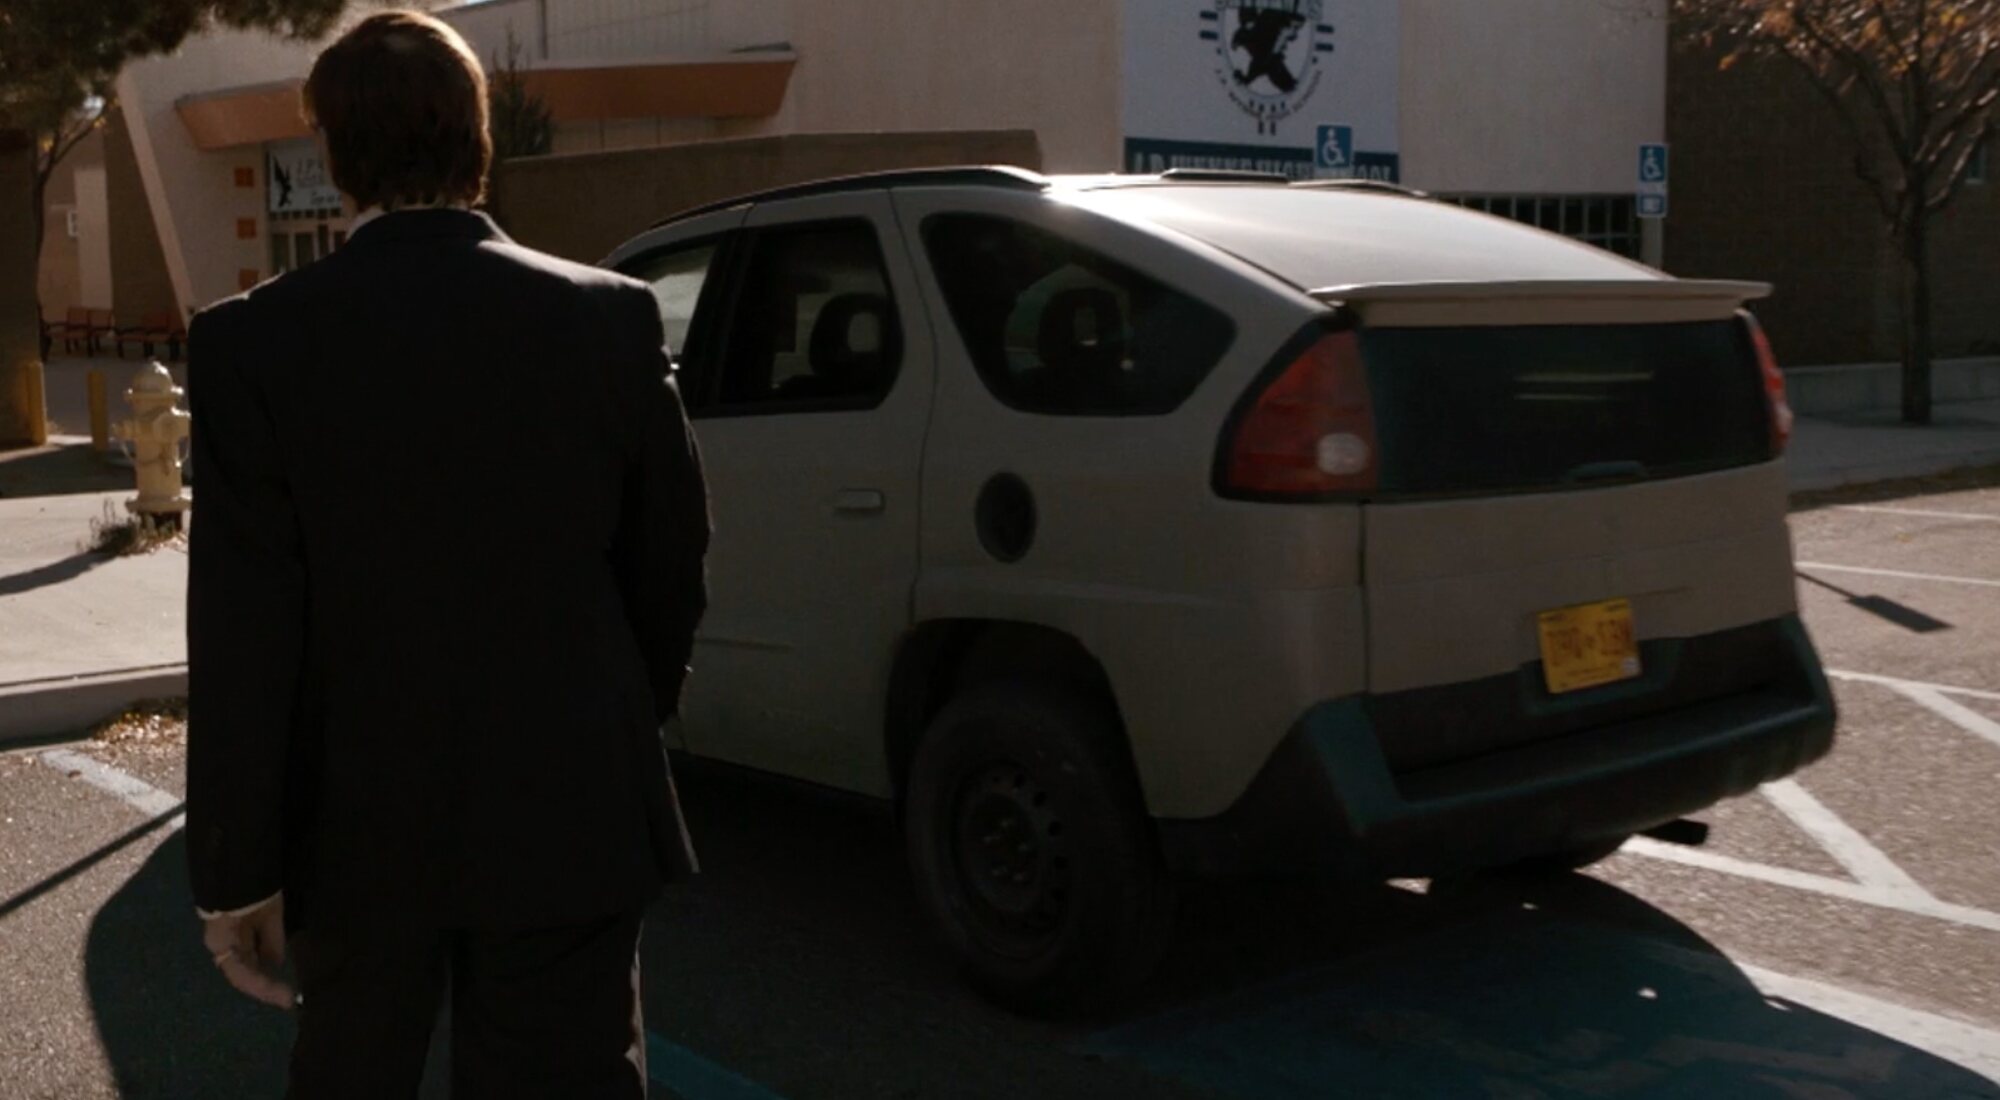 Saul pasa al lado del coche de Walter White en 'Better Call Saul'